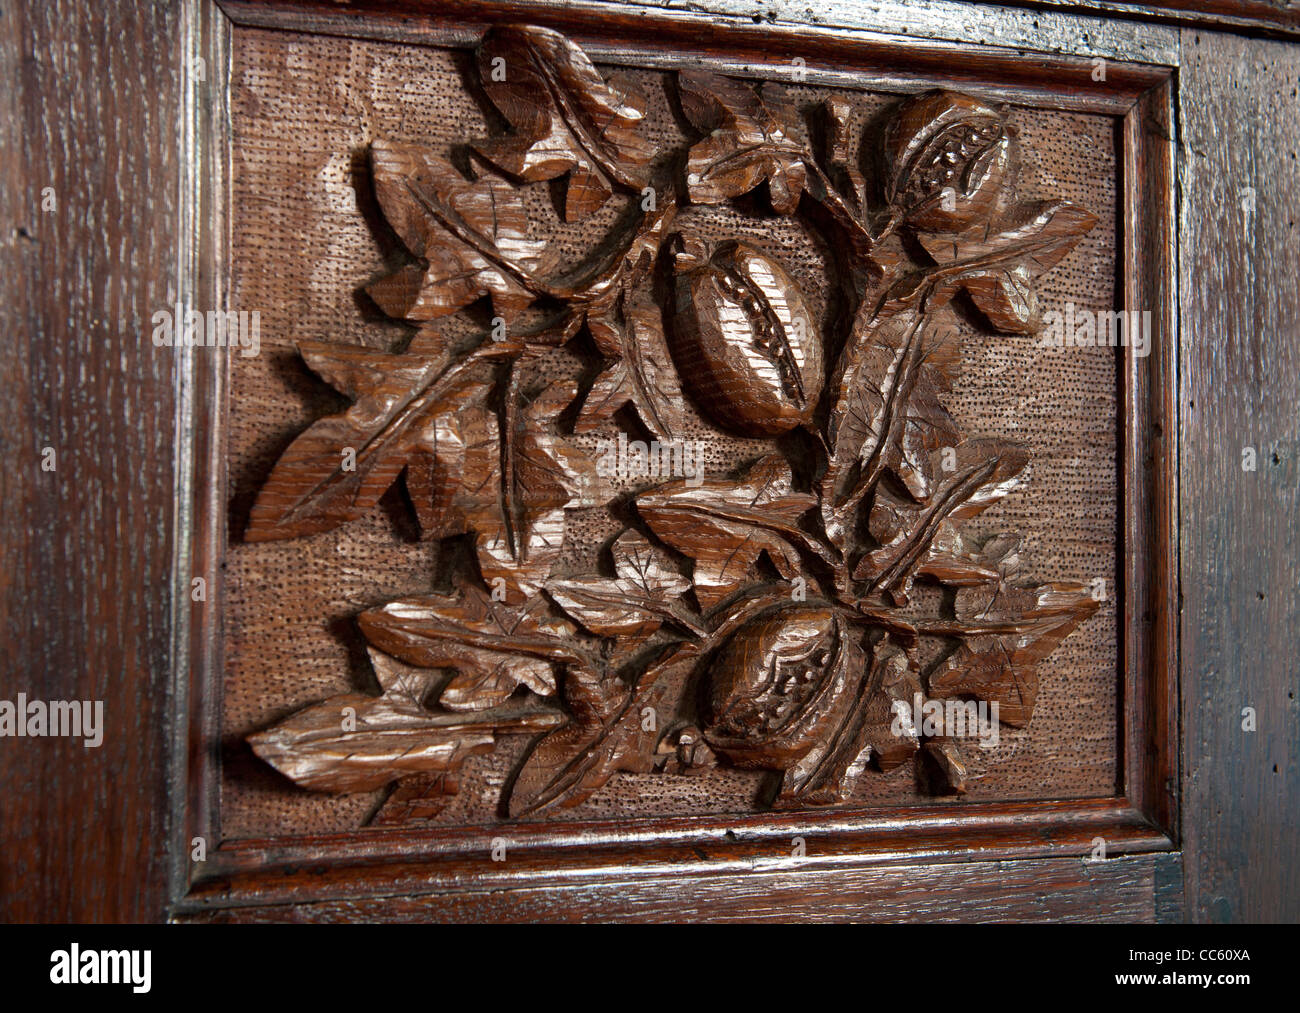 Chaire sculpture de figues, de l'église St-Matthieu, Salford Priors, Warwickshire, England, UK Banque D'Images